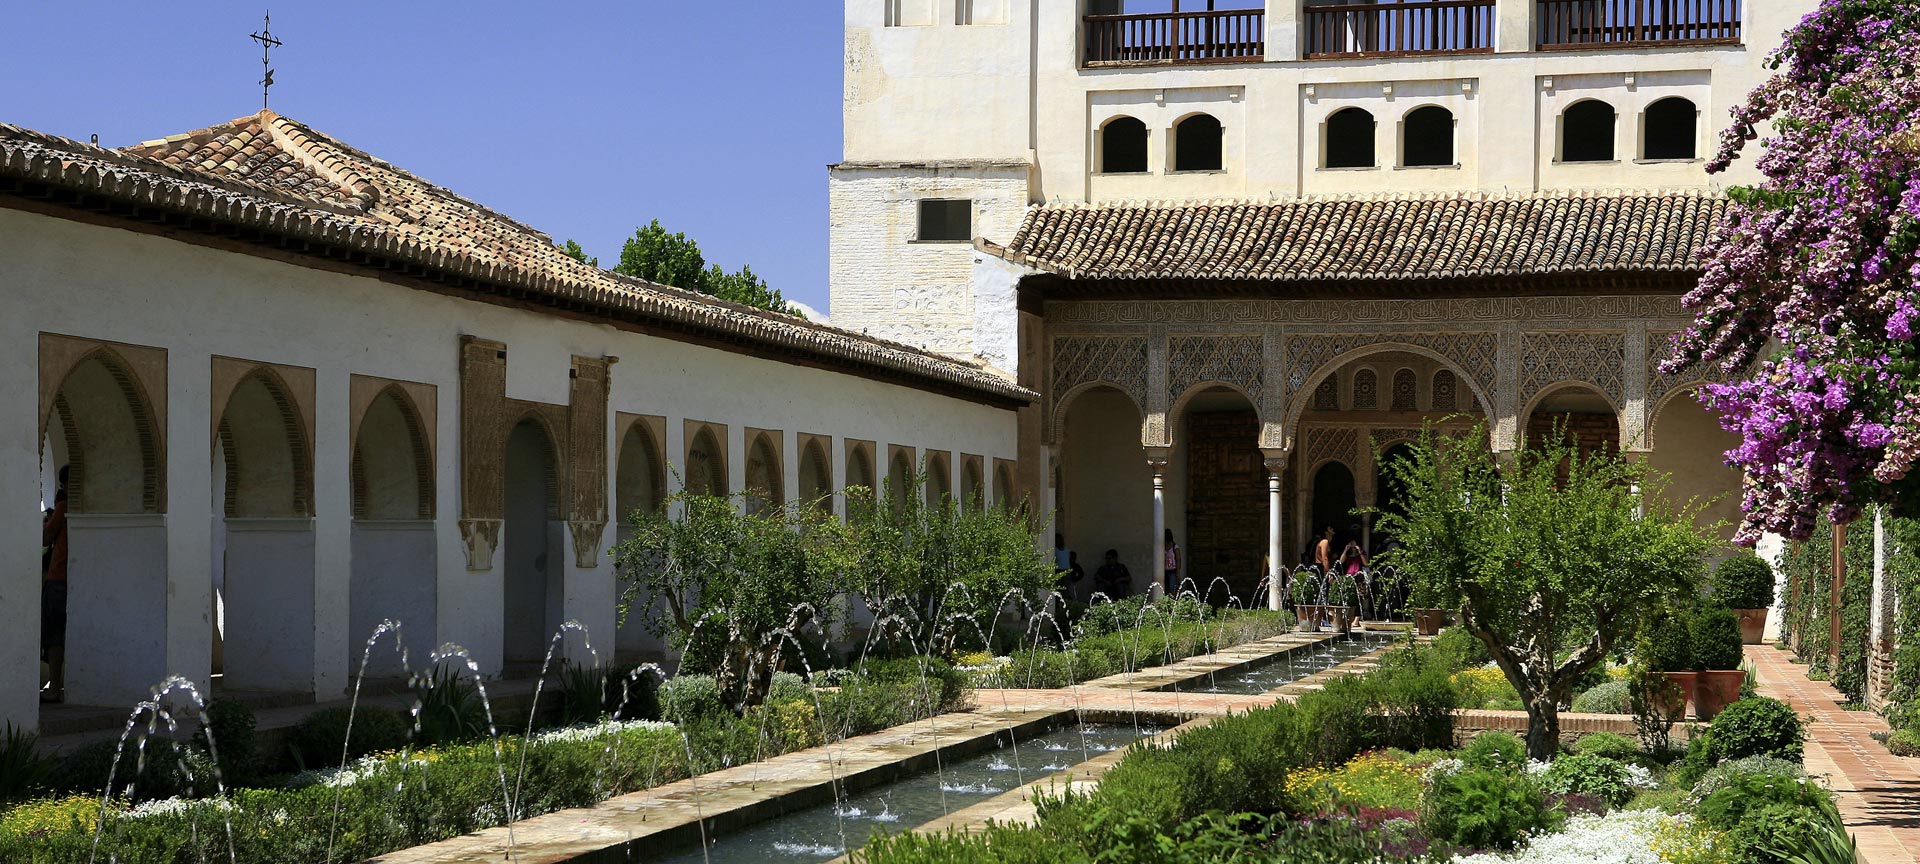 Patio de la Acequia courtyard, Generalife